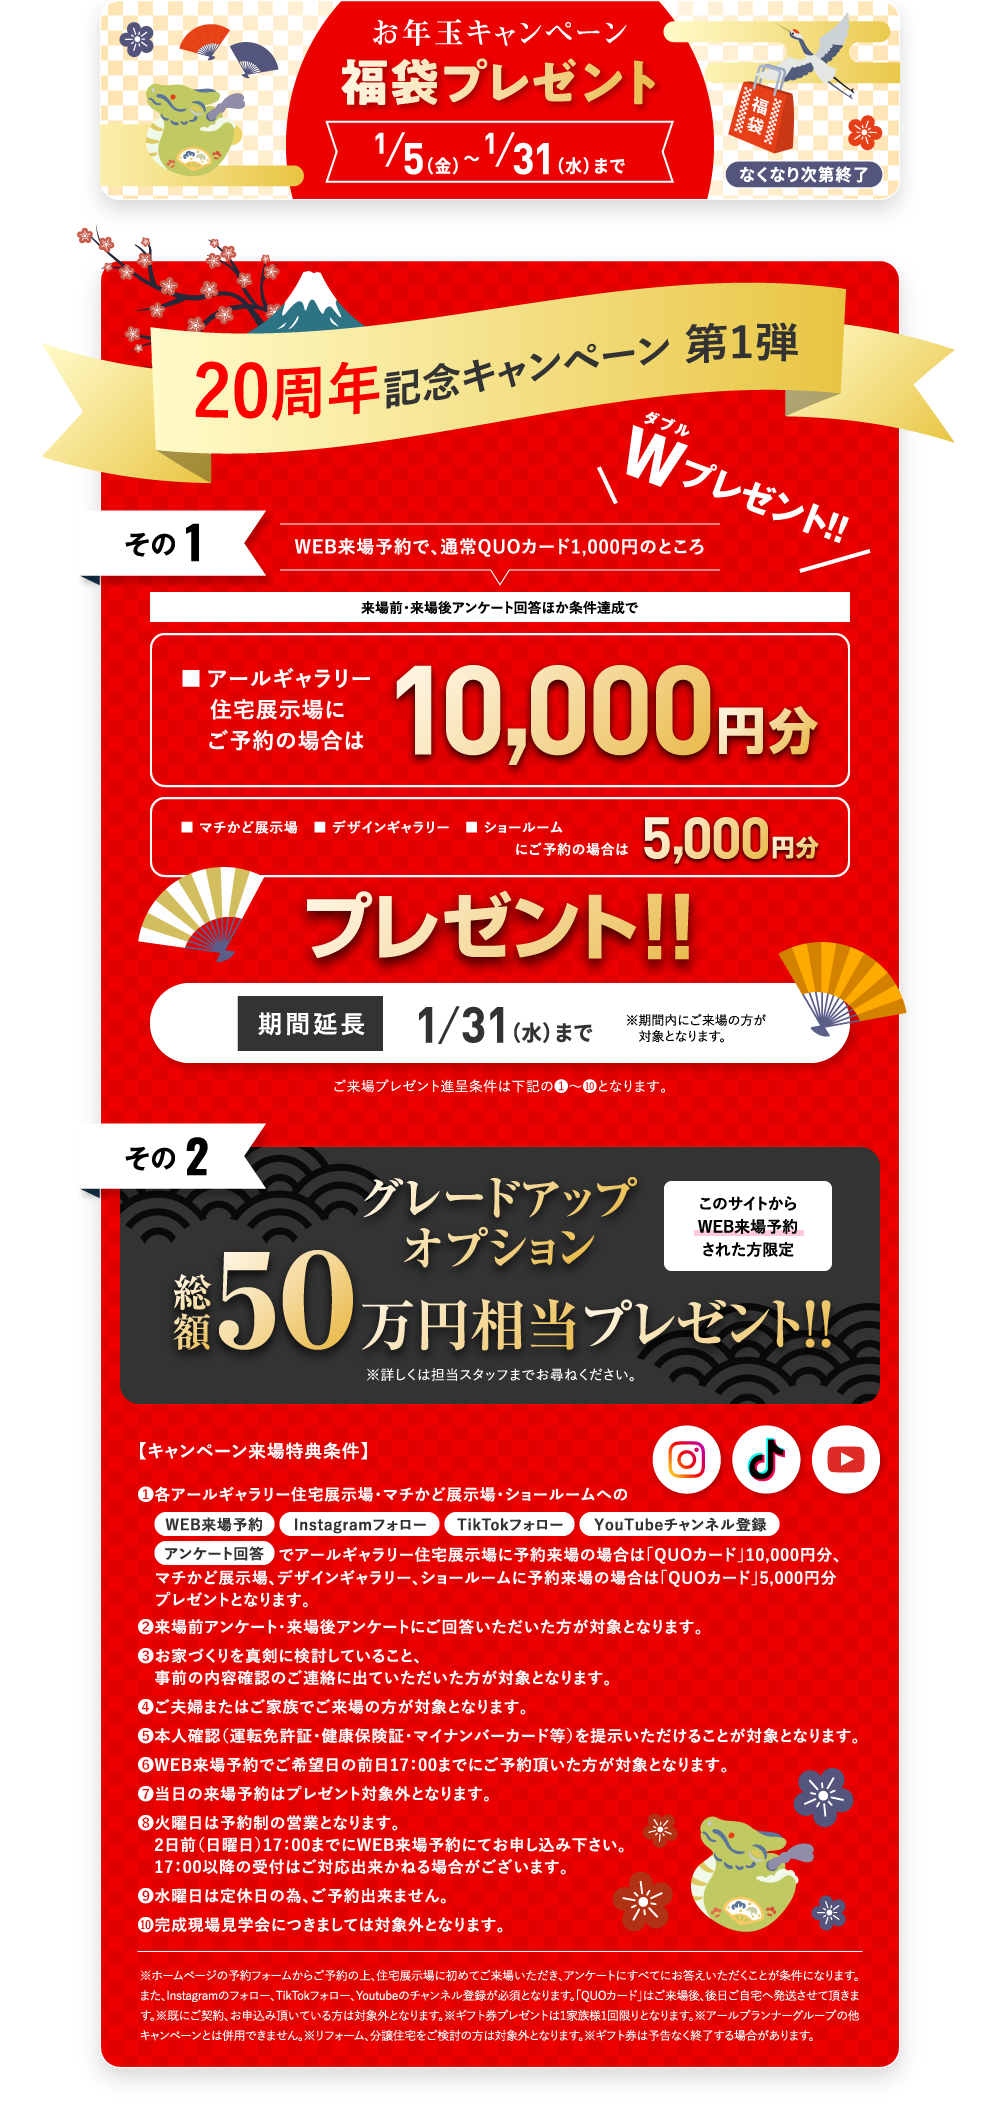 QUOカード最大10,000円分プレゼント